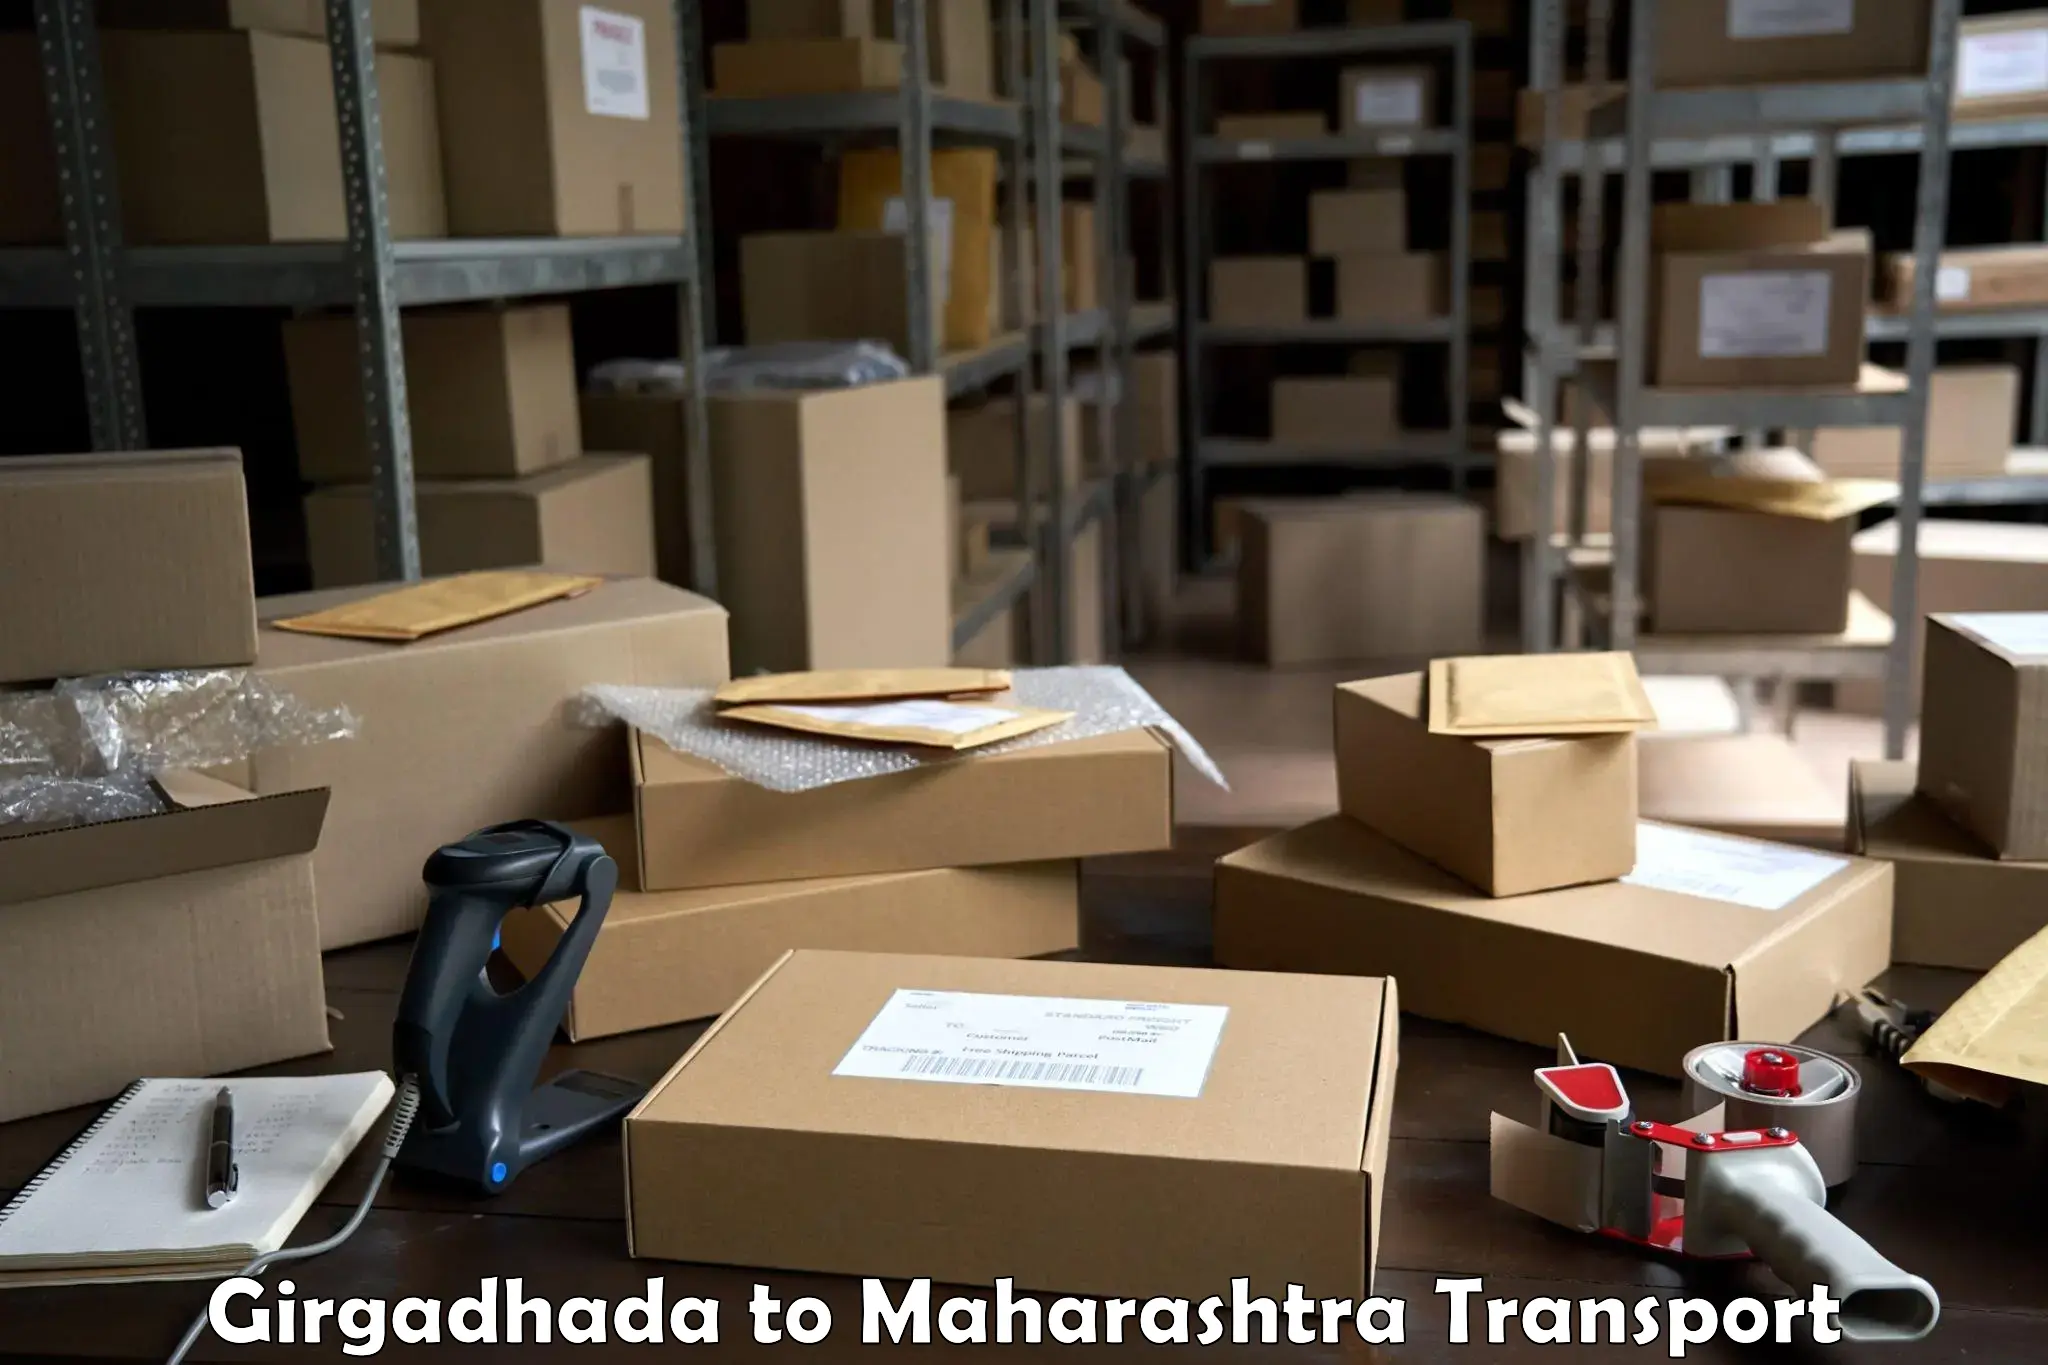 Package delivery services Girgadhada to Shivajinagar